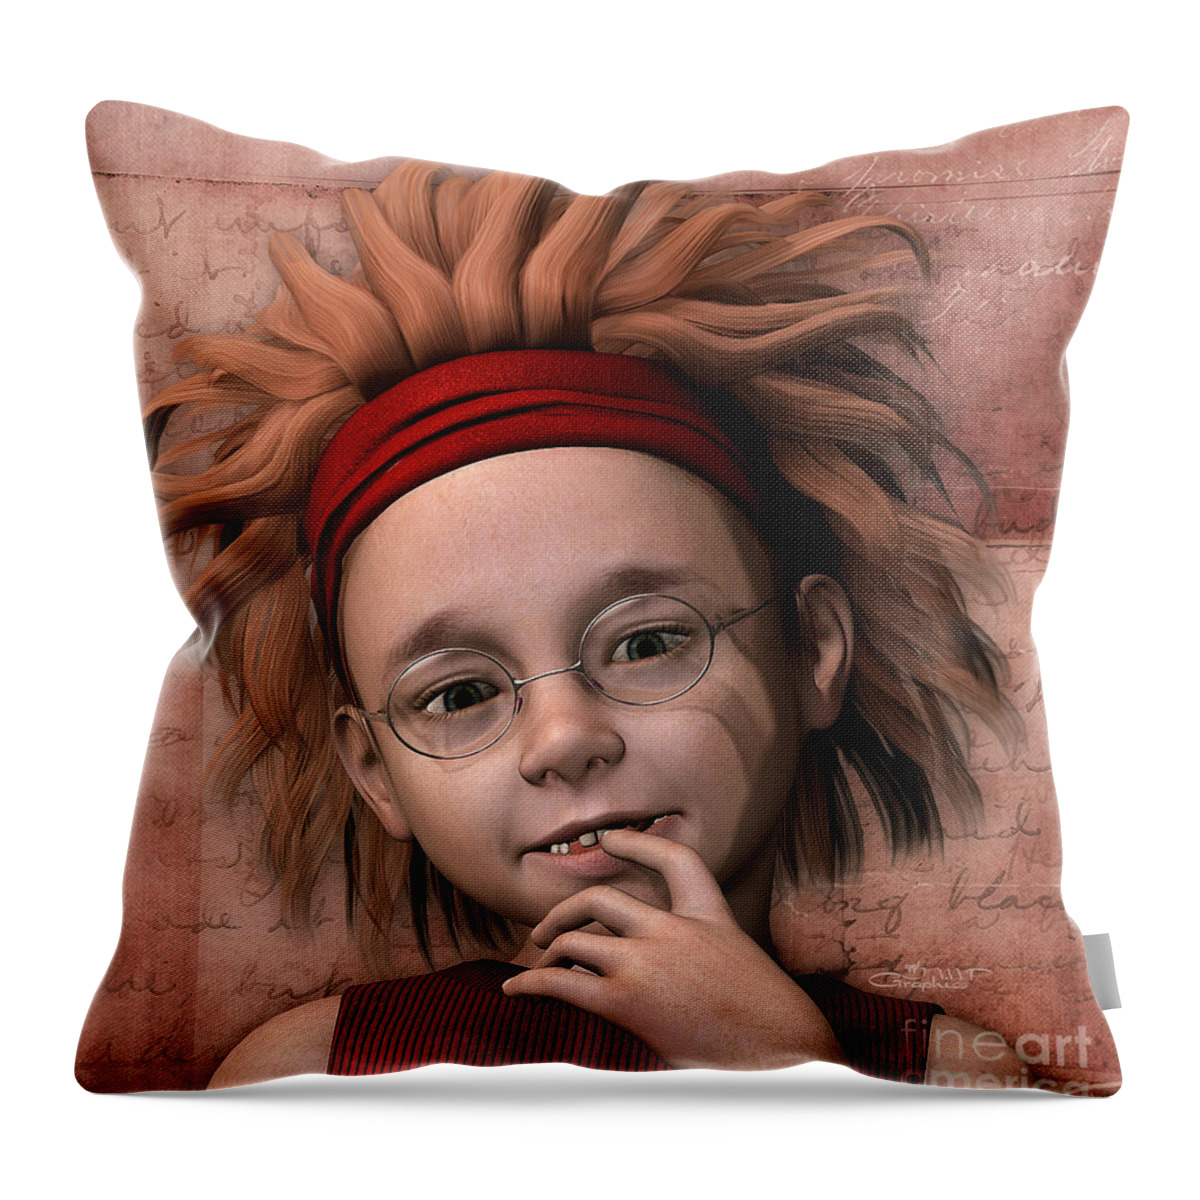 3d Throw Pillow featuring the digital art Cheeky Little Miss by Jutta Maria Pusl